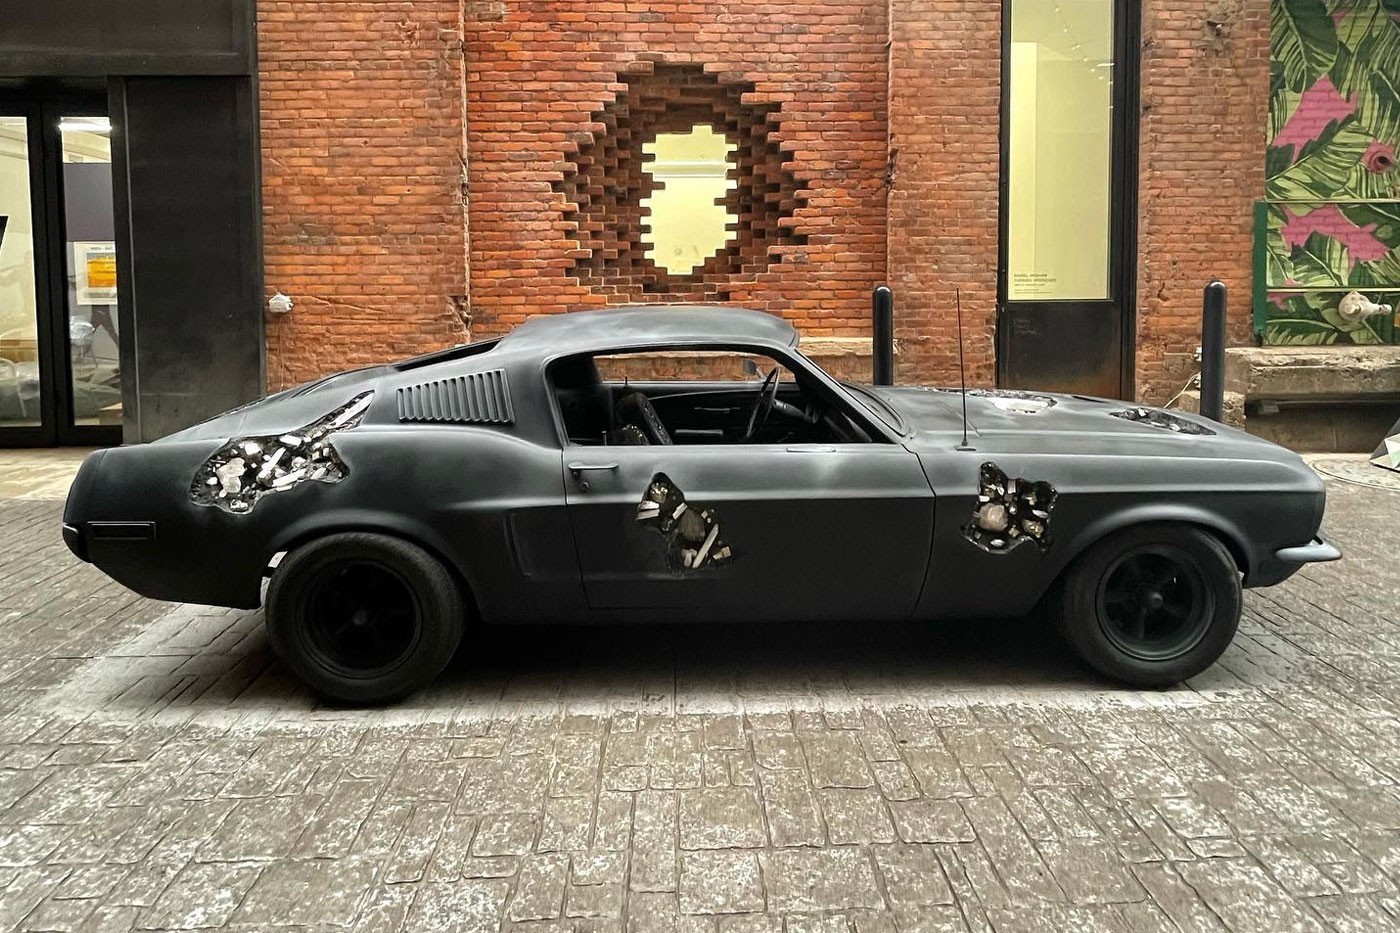 近赏 Daniel Arsham 打造 1968 Ford Mustang GT 经典车款雕塑